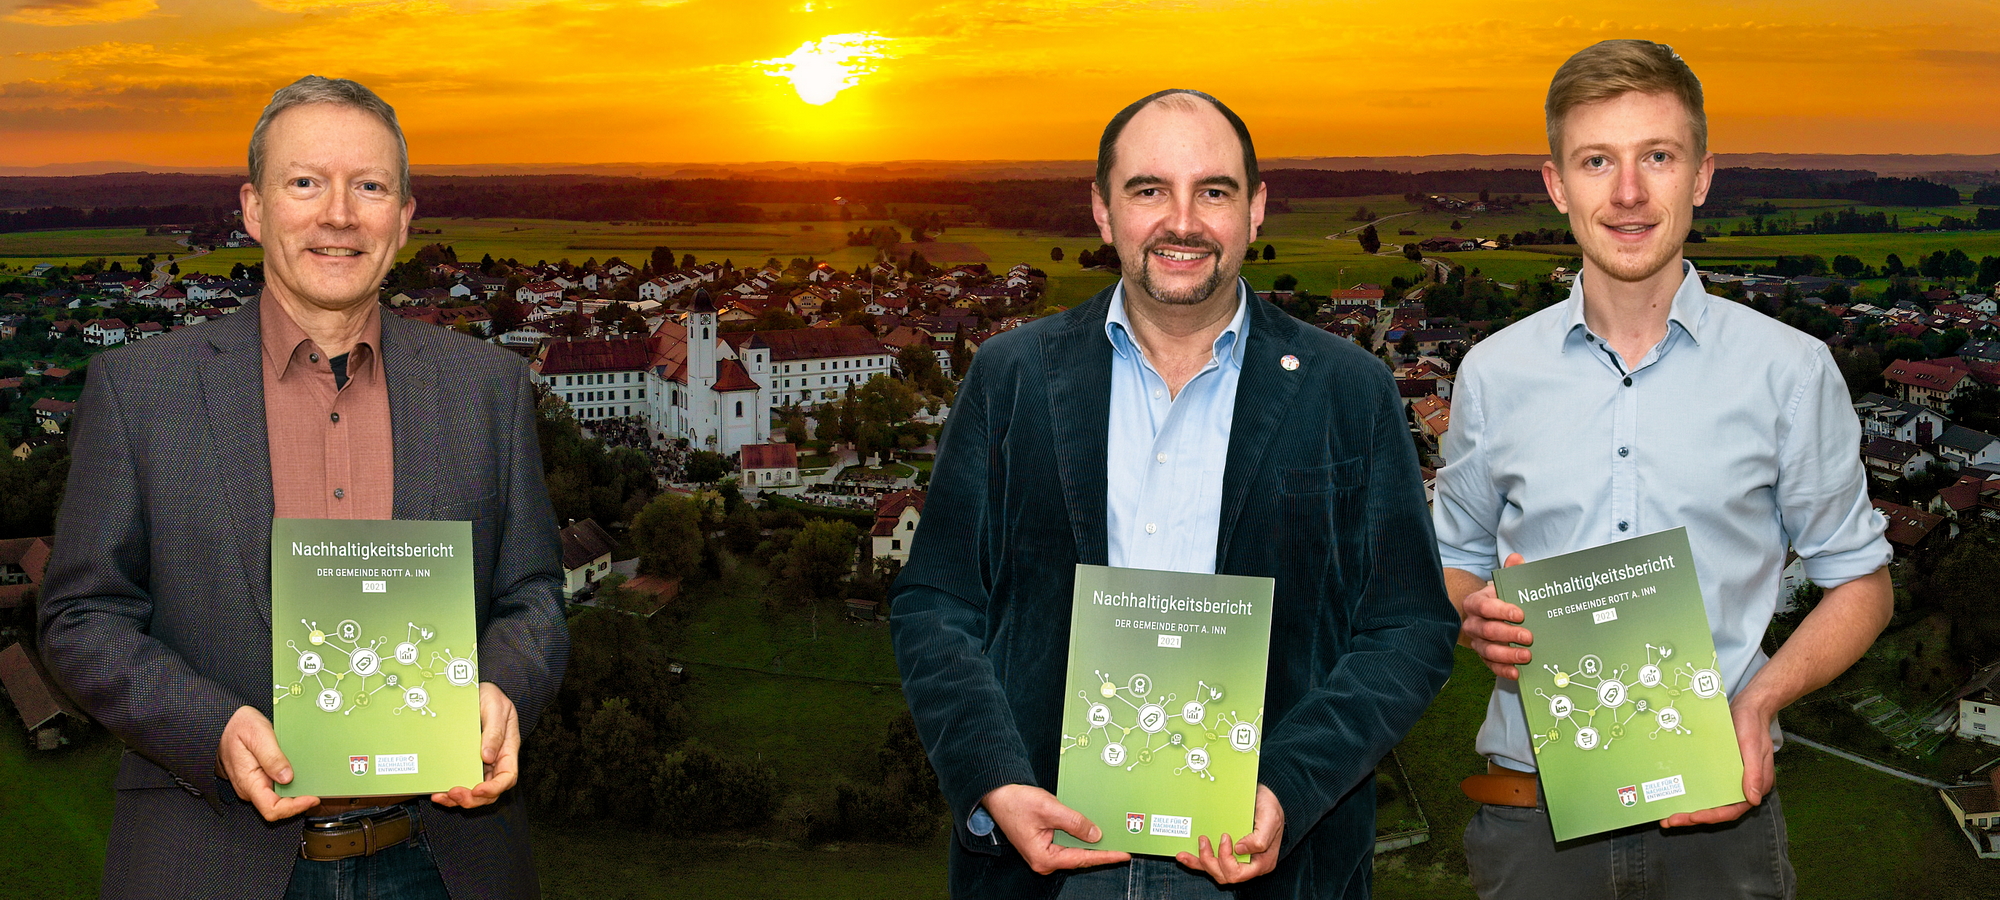 Rott a.Inn veröffentlicht ersten Nachhaltigkeitsbericht – Wendrock: Andere Gemeinden sollen nachziehen